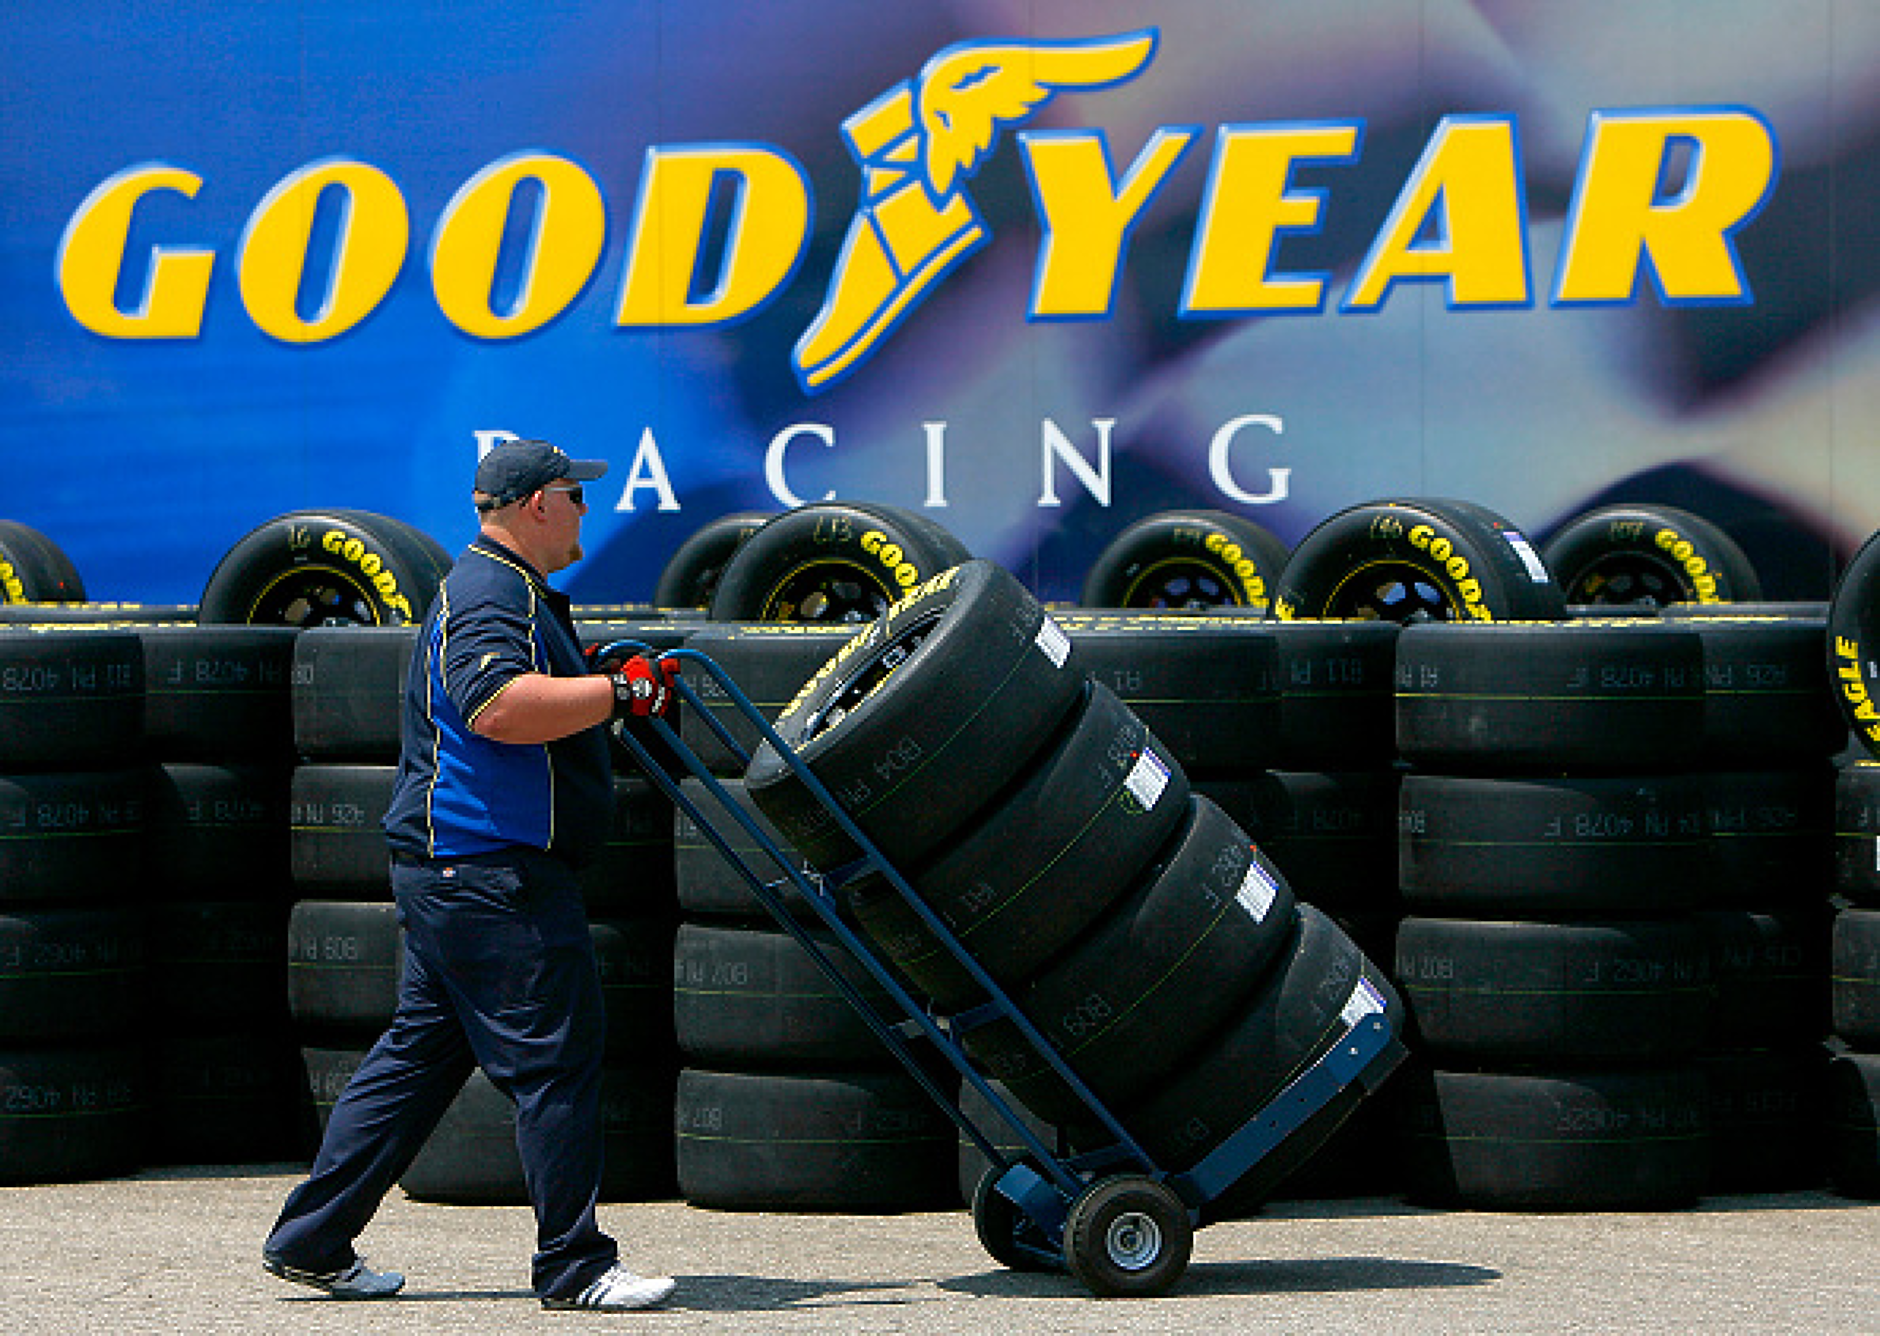 Производителят на автомобилни гуми Goodyear затваря два от заводите си в Германия